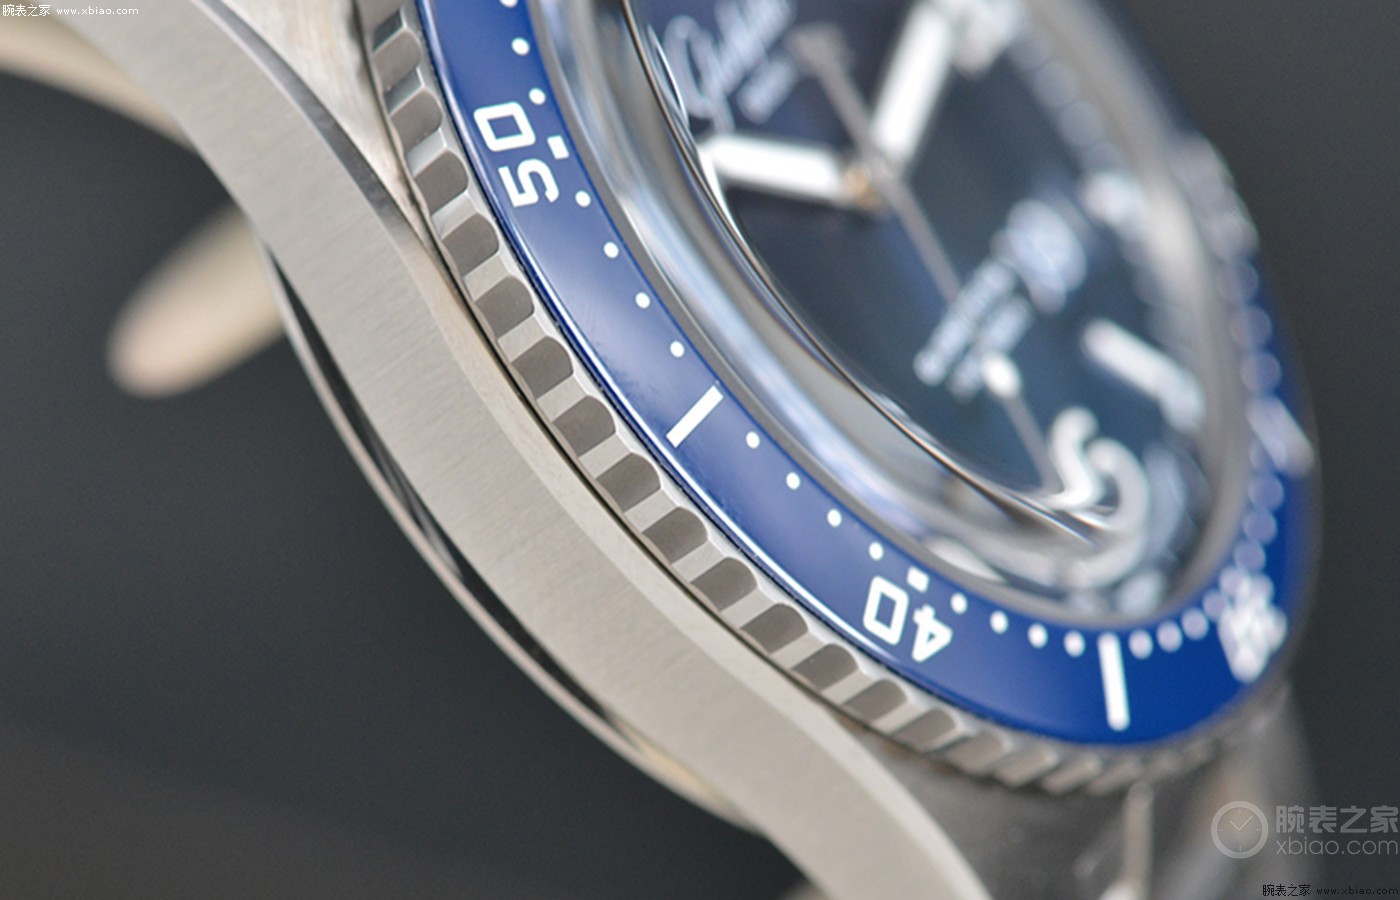 二十七]专业与好用的完美融合 品评格拉苏蒂原创大日历SeaQ腕表